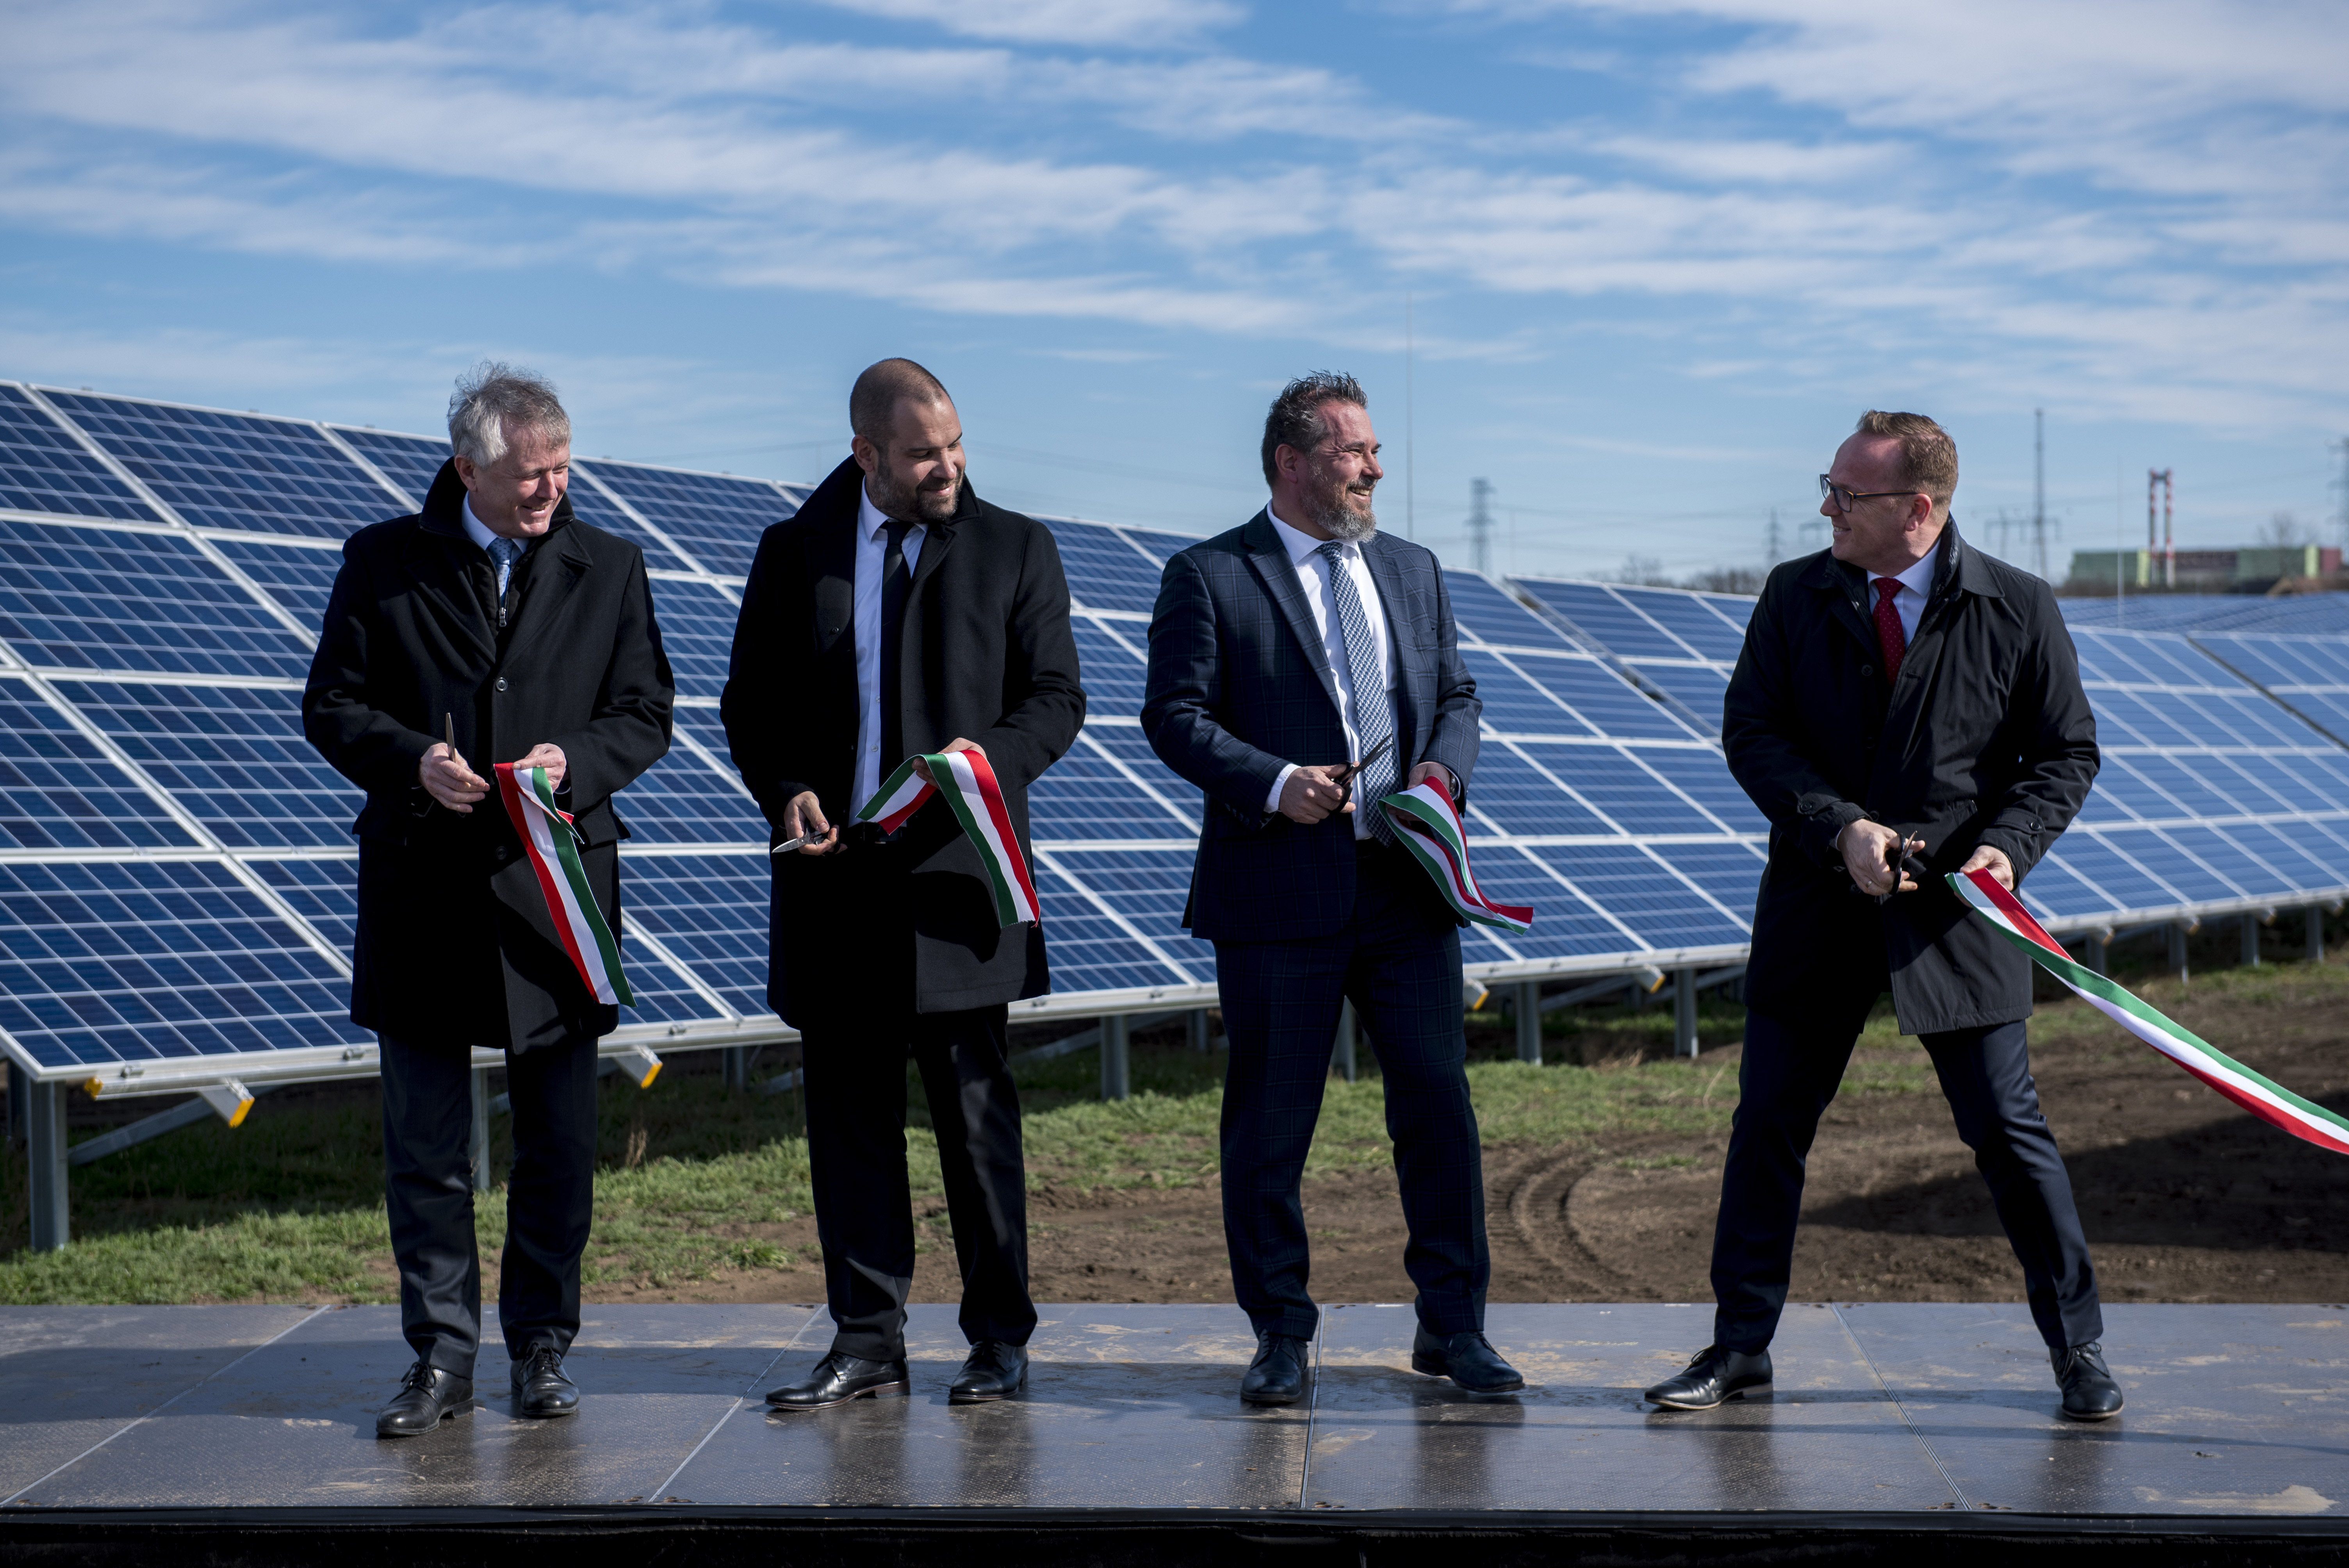 венгерская солнечная электростанция